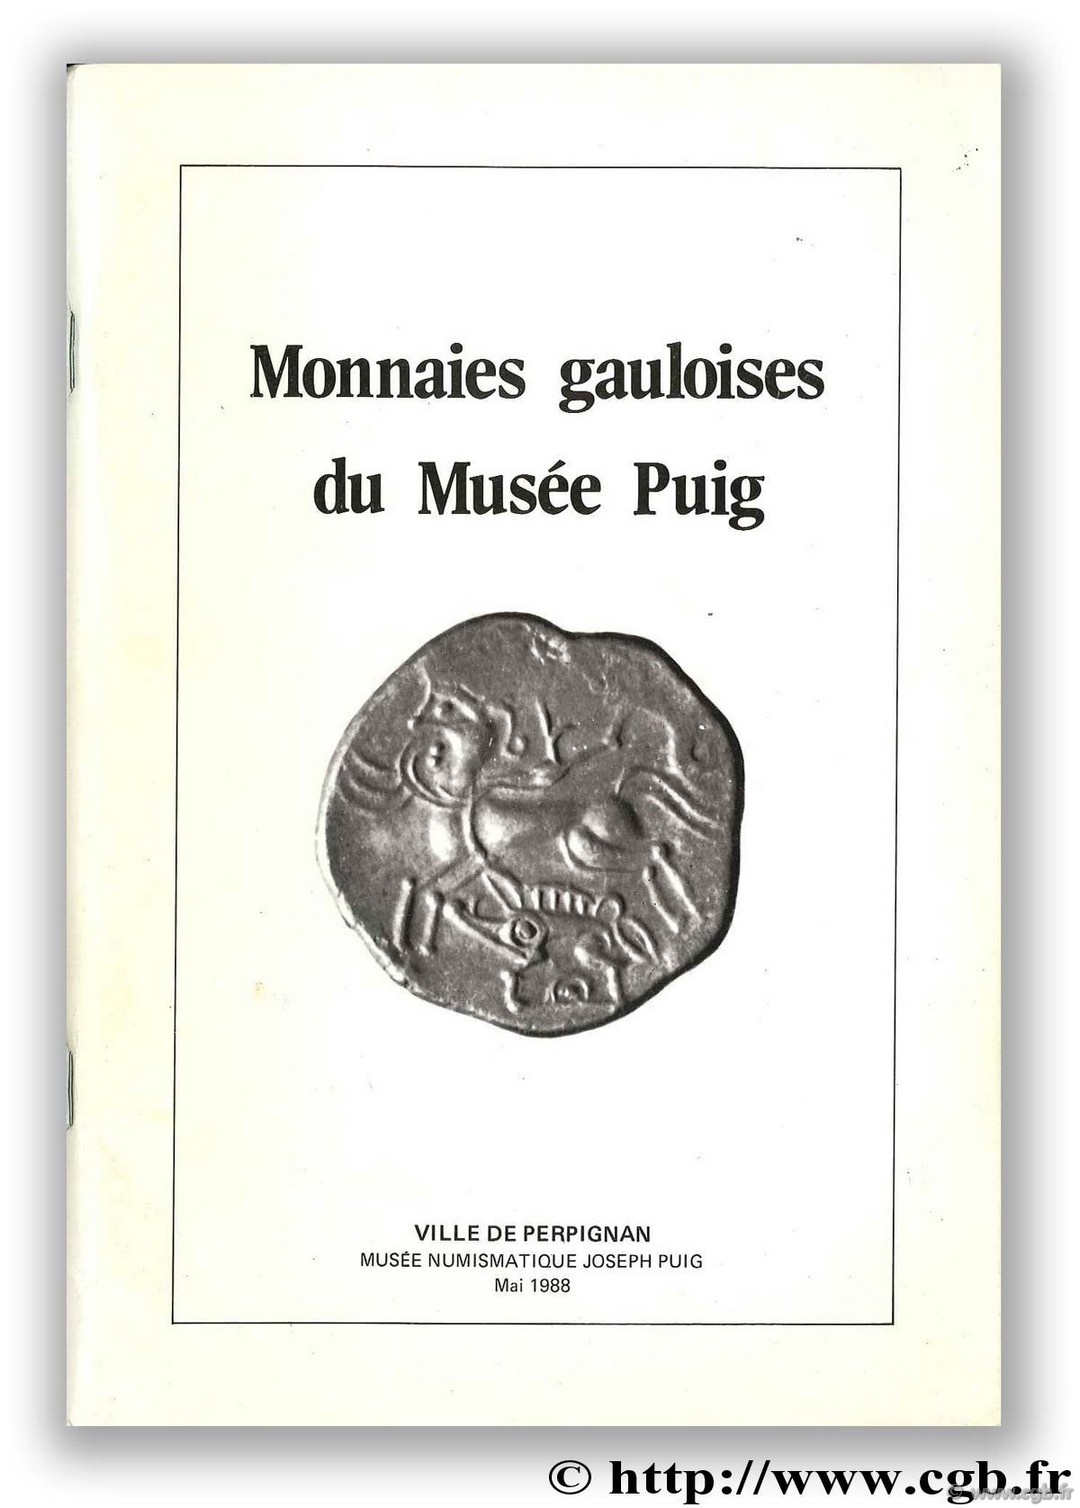 Monnaies gauloises du Musée Puig JOUSSEMET J.